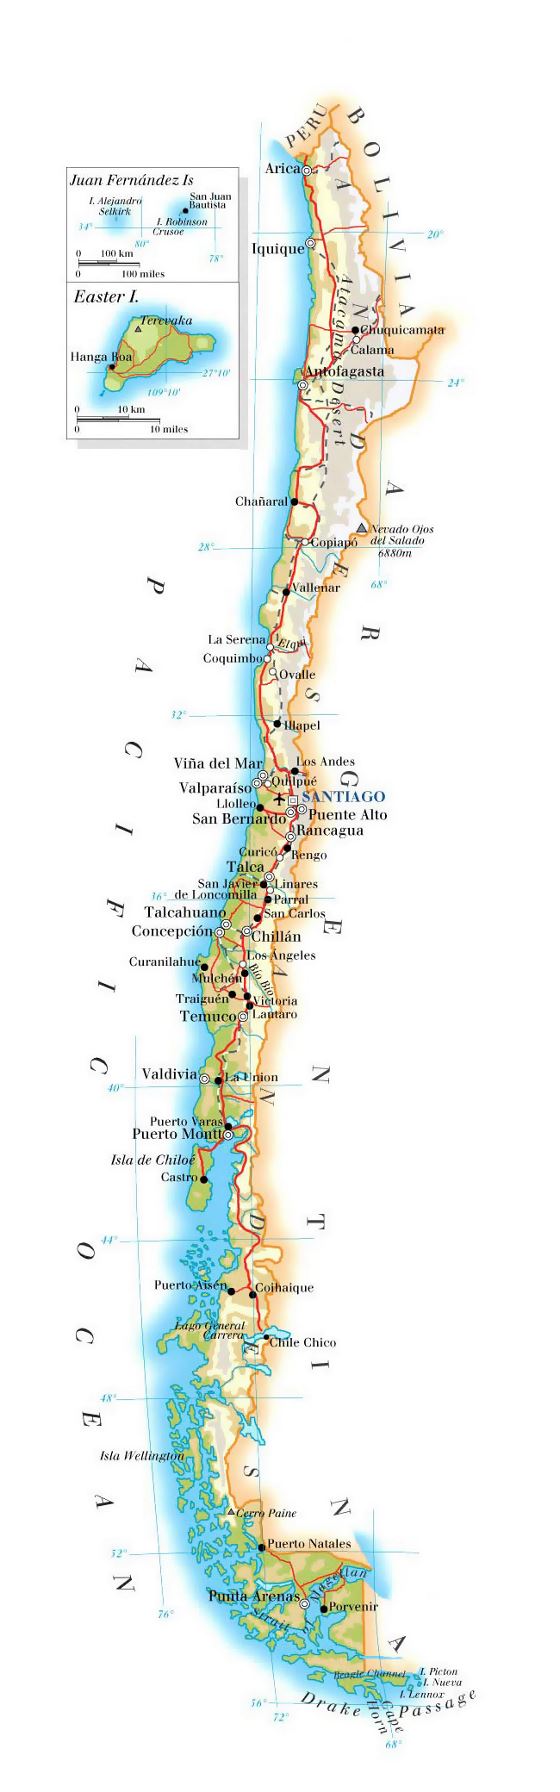 Detallado mapa de elevación de Chile con carreteras, ciudades y aeropuertos